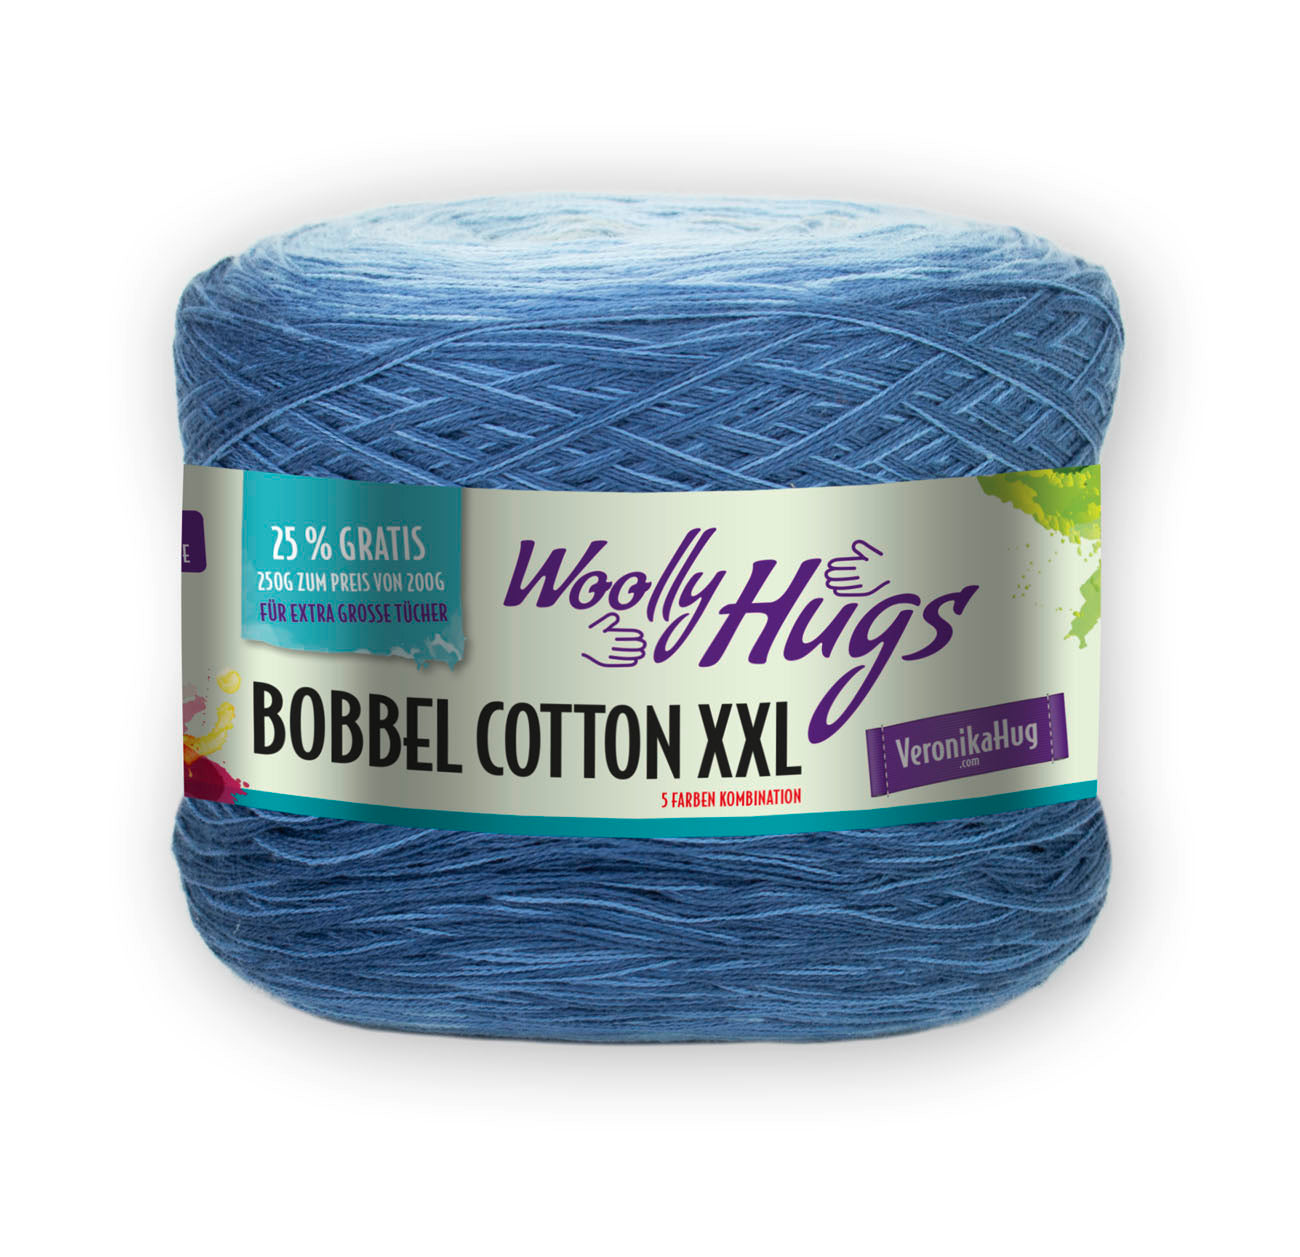 Bobbel Cotton XXL von Woolly Hugs